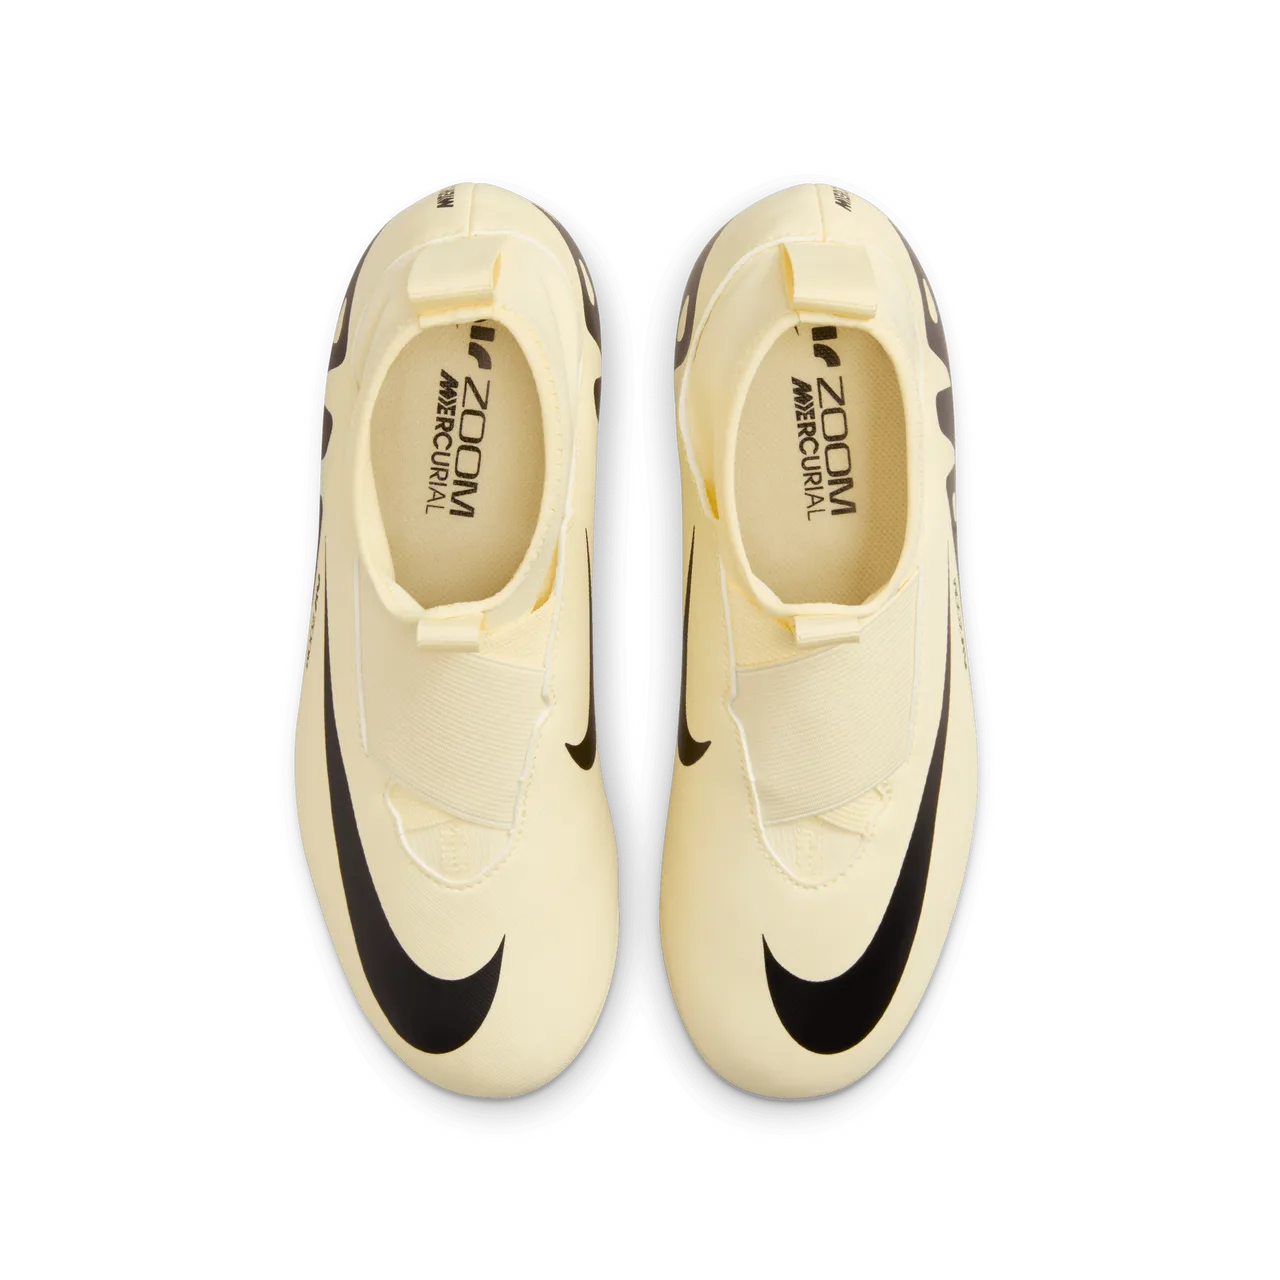 Nike Jr. Mercurial Superfly 9 Academy high top voetbalschoenen voor kleuters/kids (kunstgras) - Geel